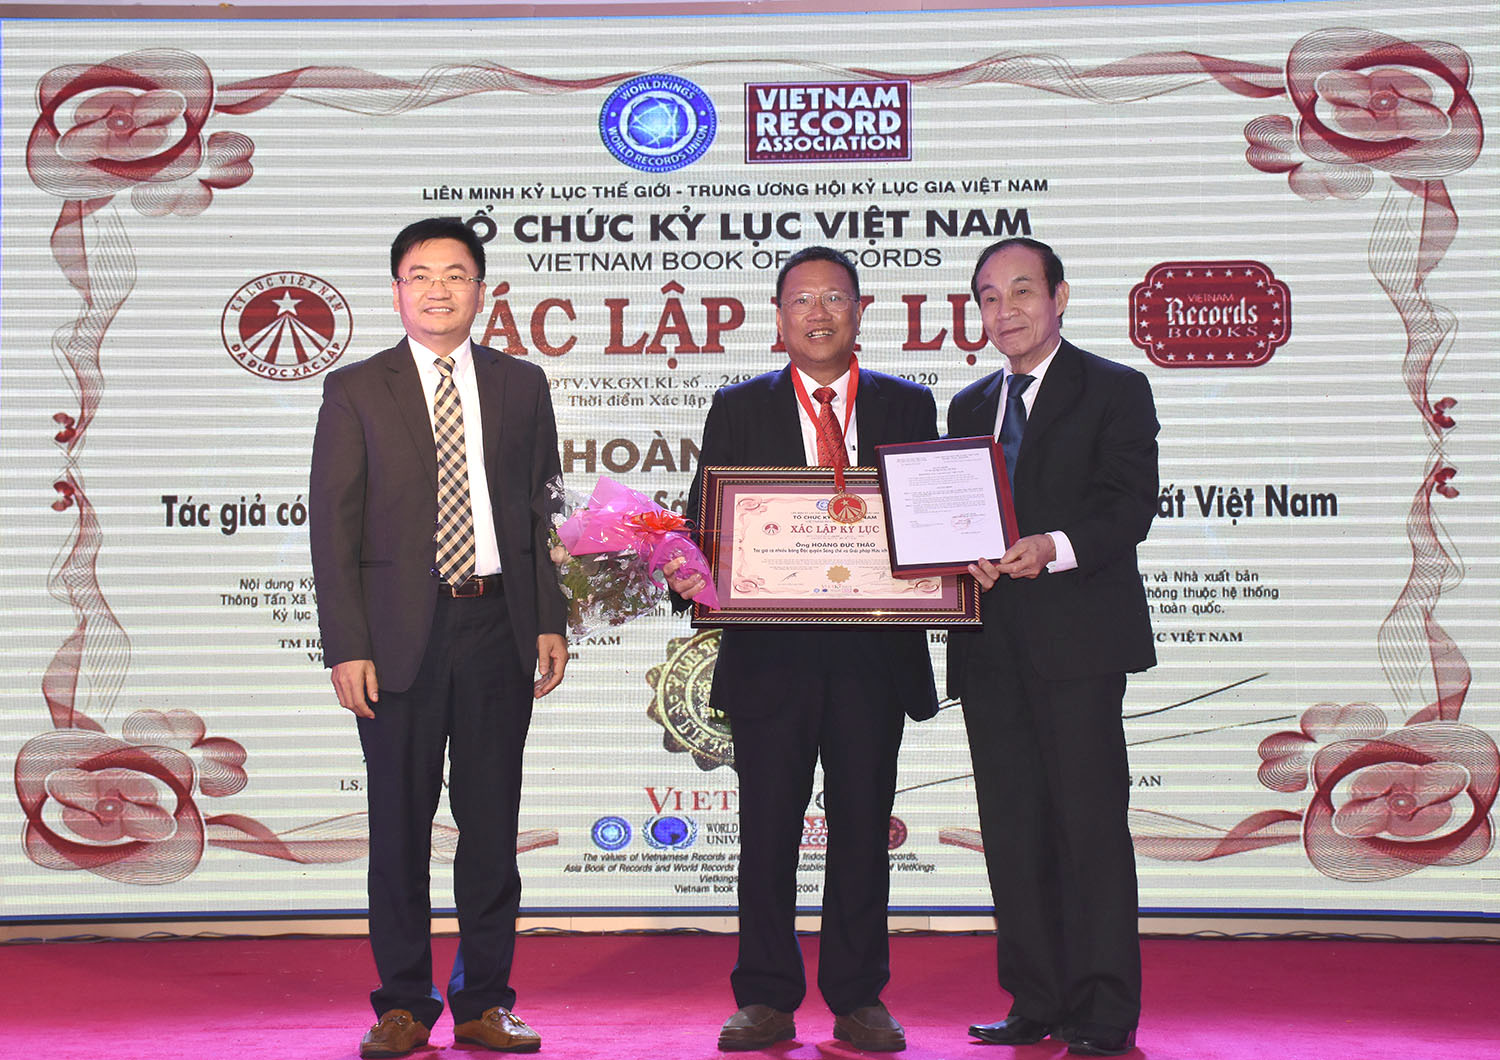 Đại diện Tổ chức Kỷ lục Việt Nam và Hội Kỷ lục gia Việt Nam trao chứng nhận kỷ lục Việt Nam cho cá nhân ông Hoàng Đức Thảo.